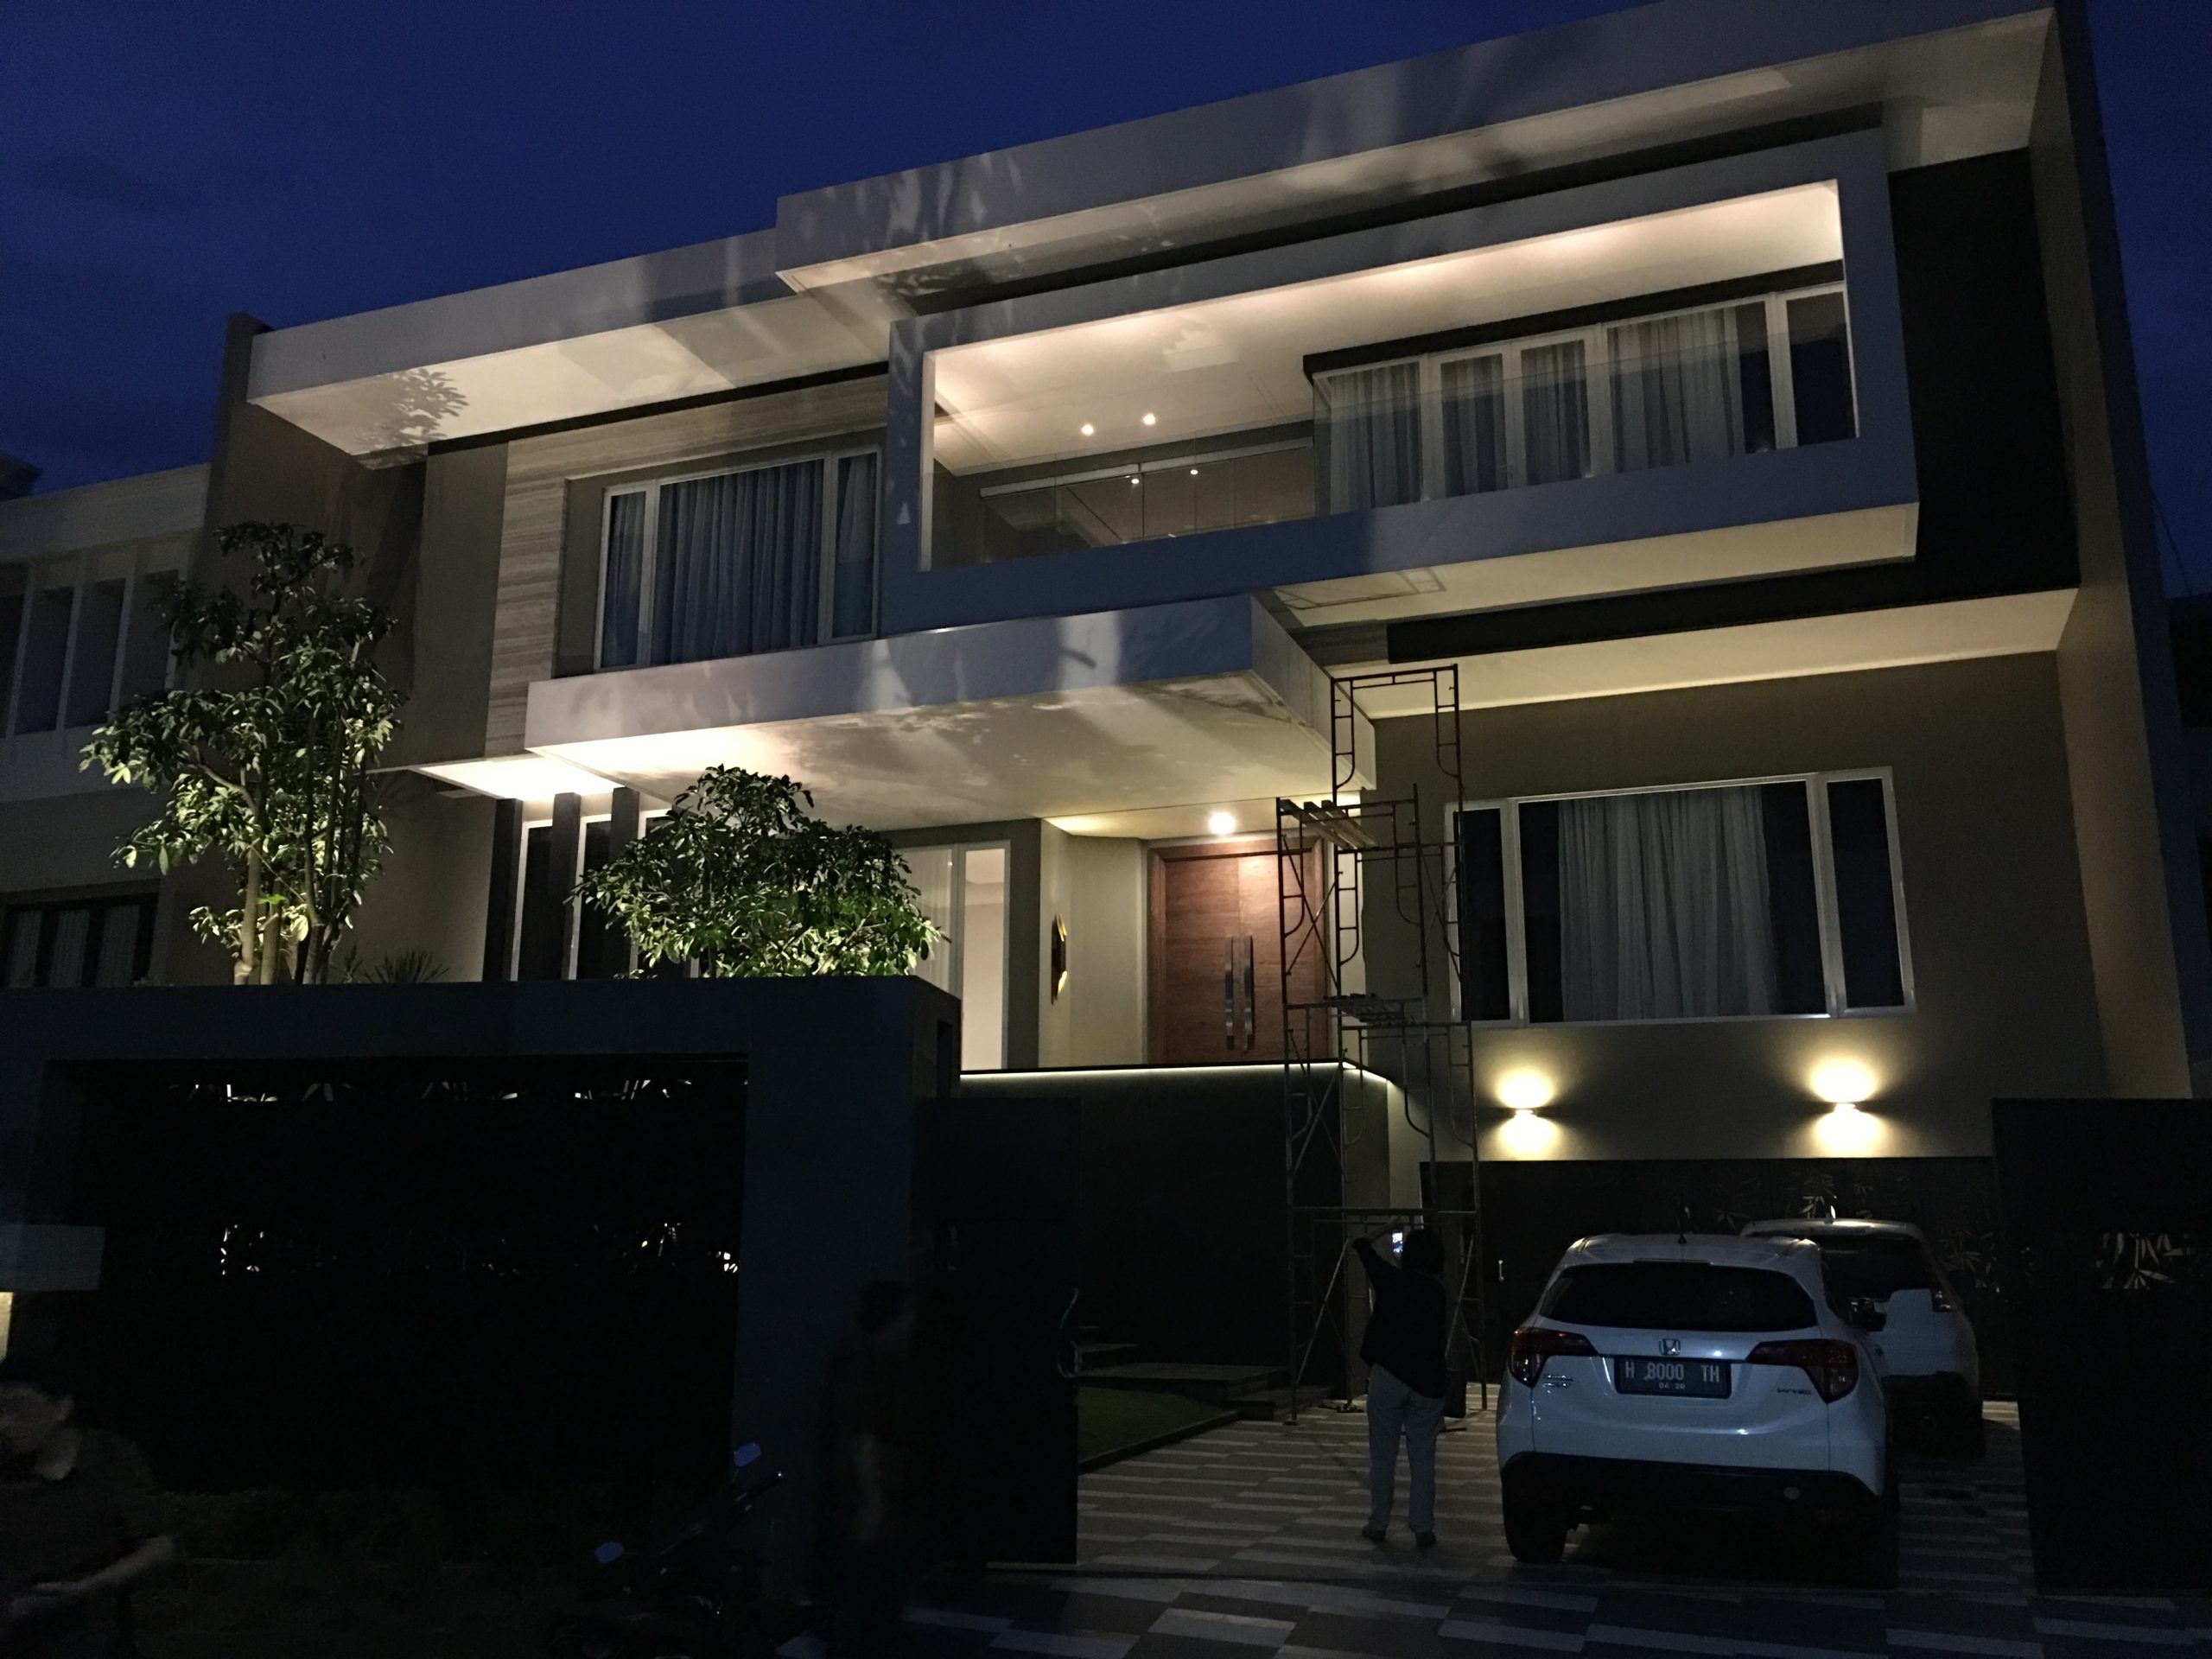 Rumah Tinggal Residential Semarang Lighting Design Lighting Architectural Lighting Interior